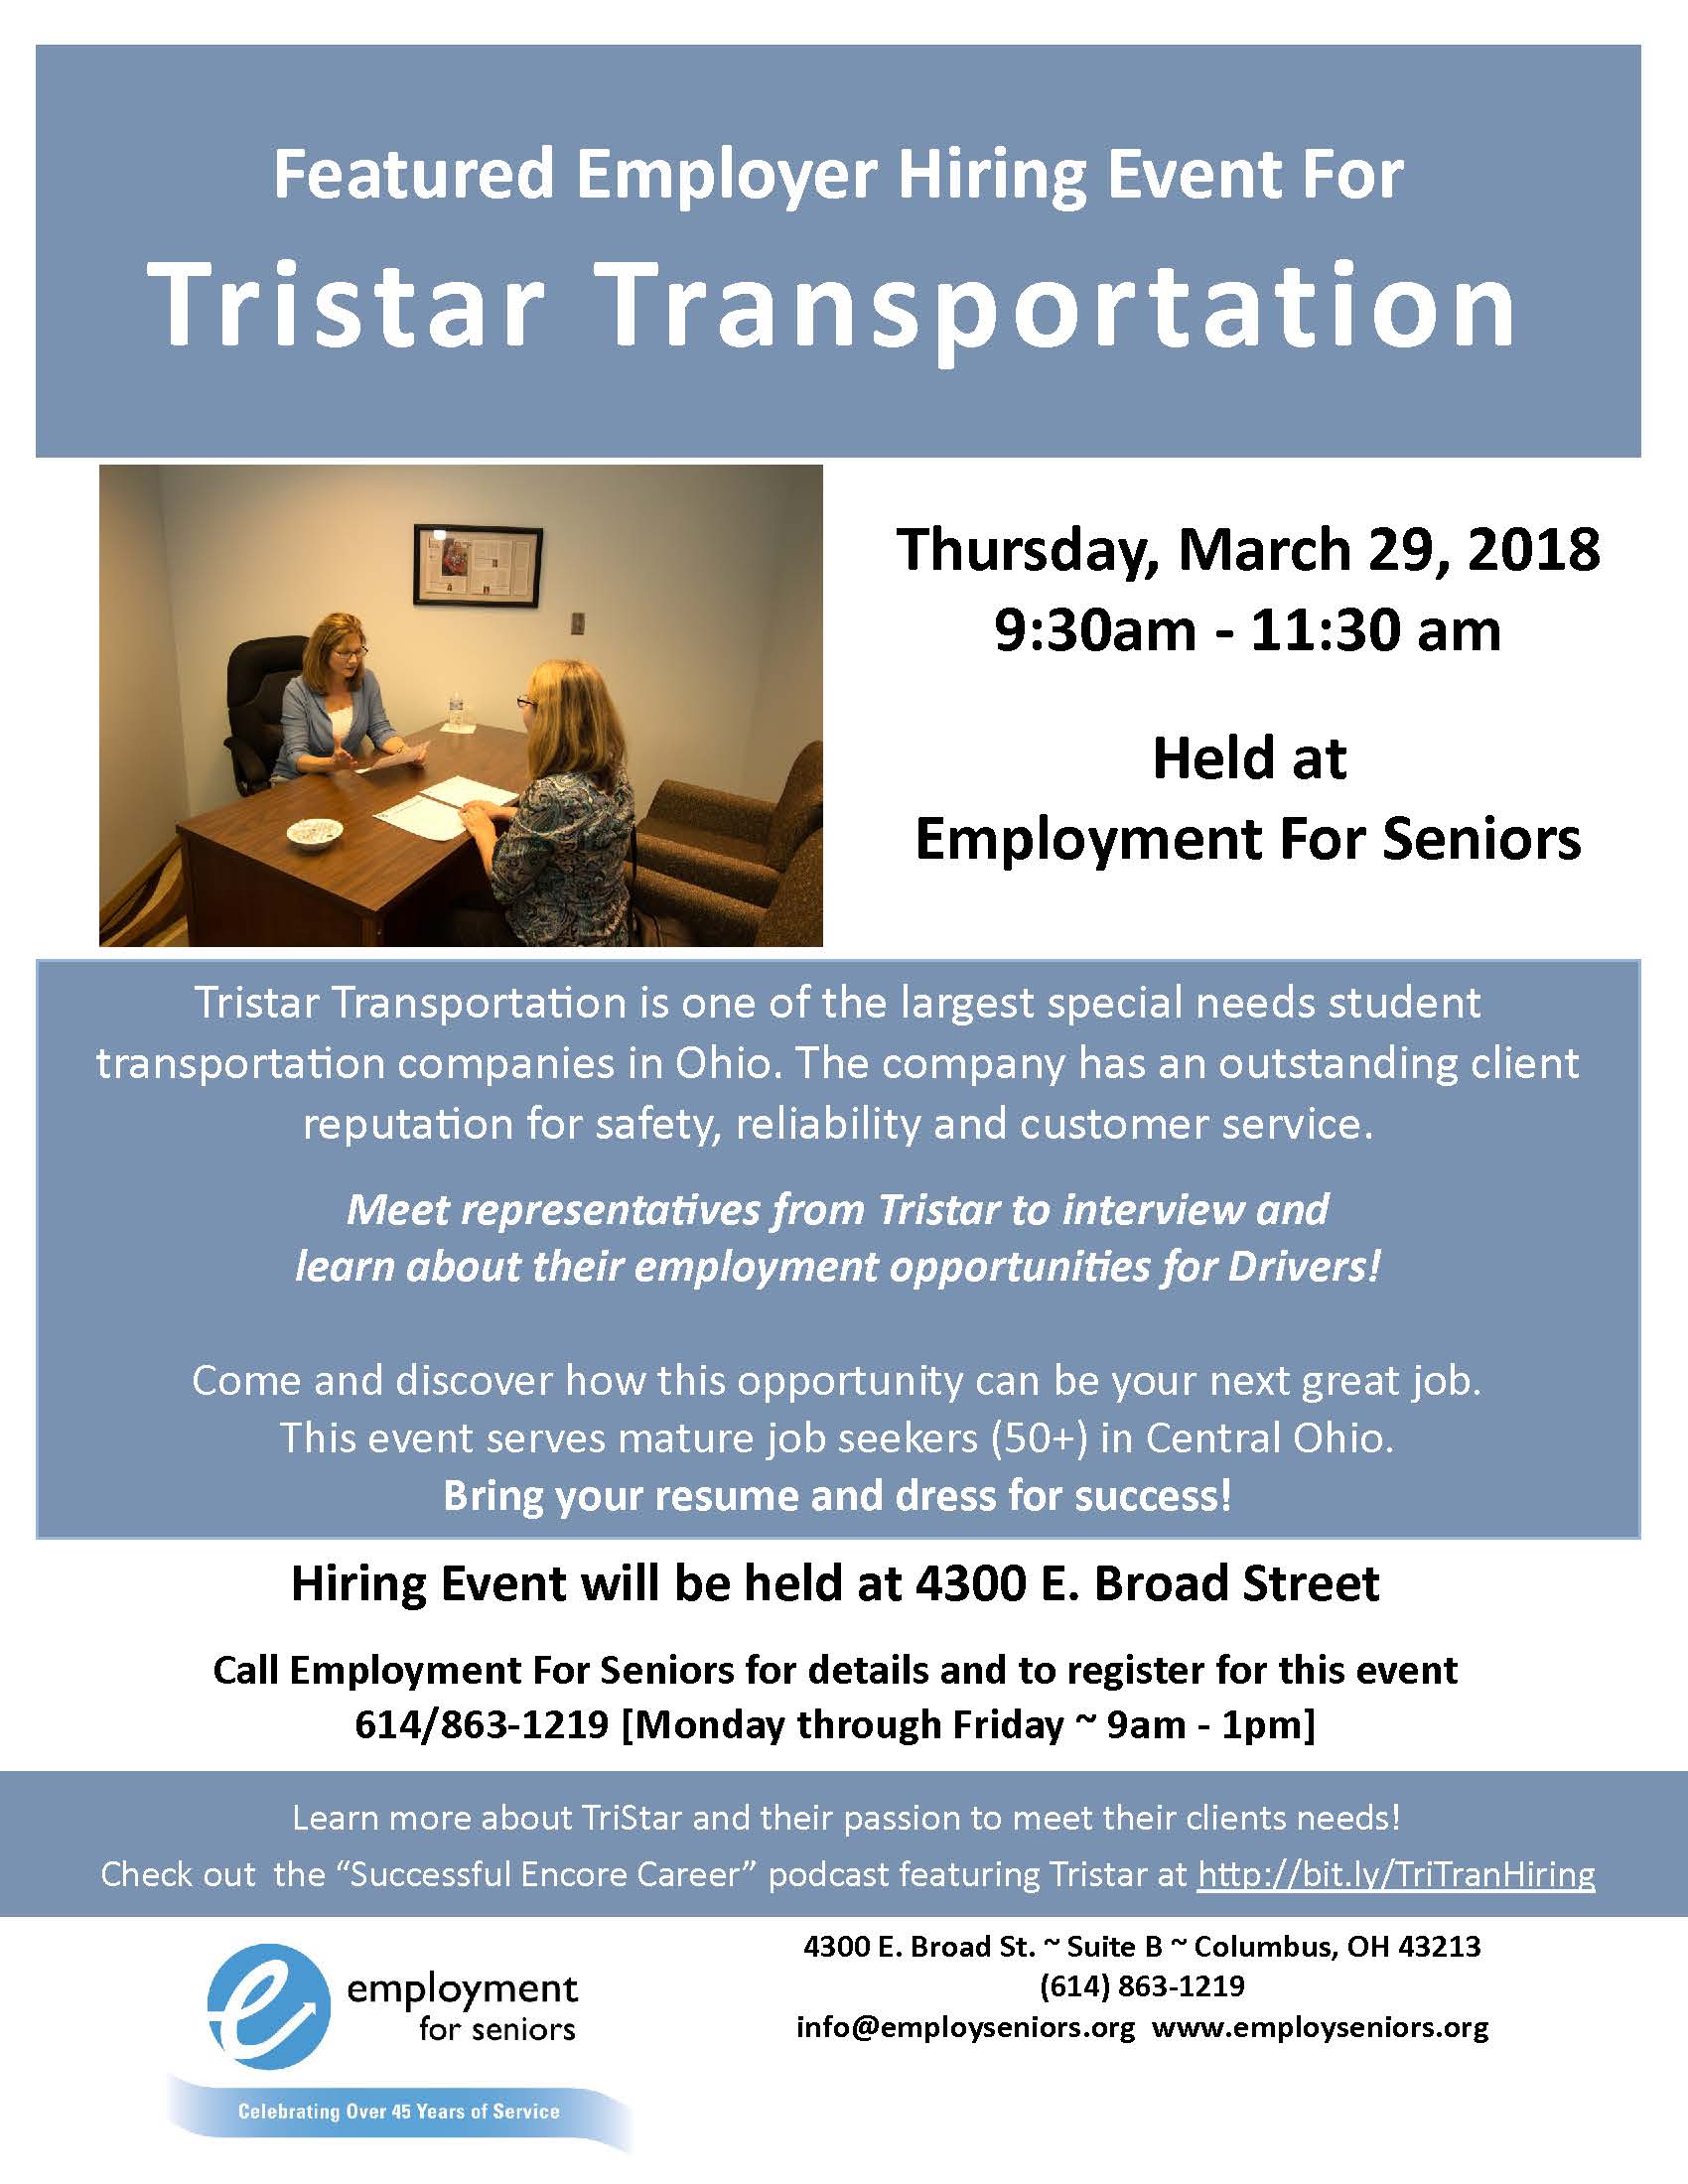 Hiring Event Tristar Transportation